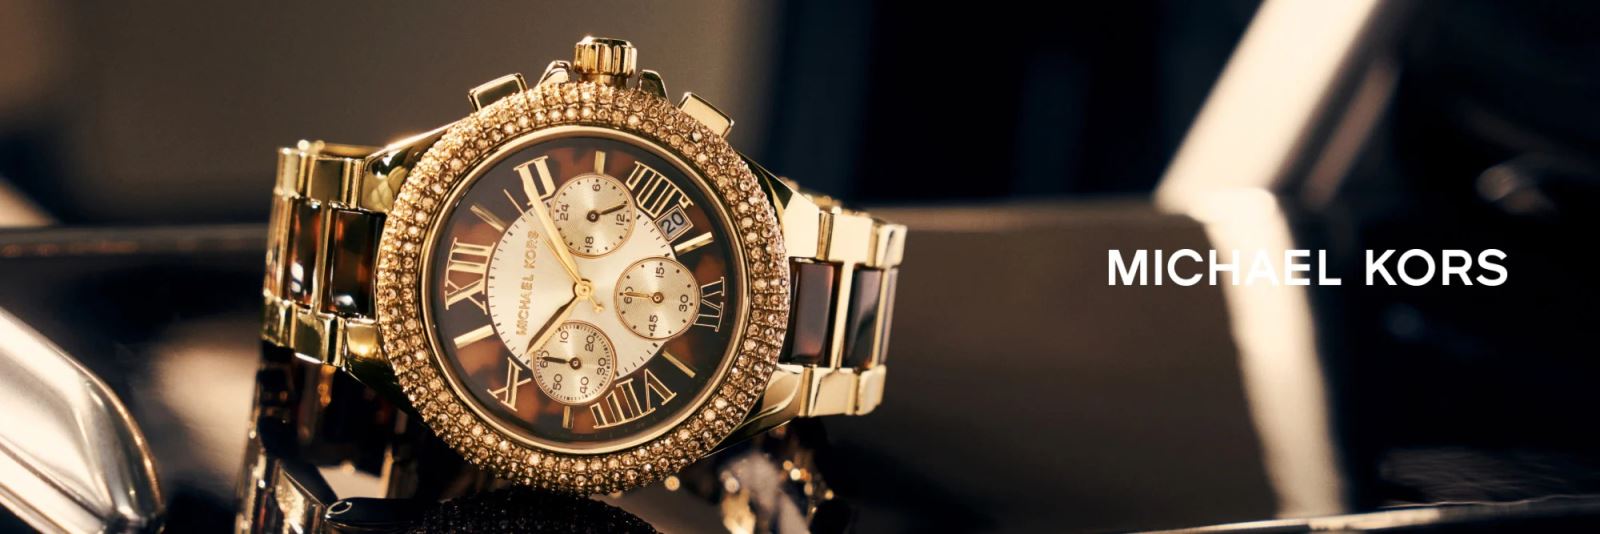 luxury shopping địa điểm mua đồng hồ michael kors chính hãng uy tín tại việt nam 